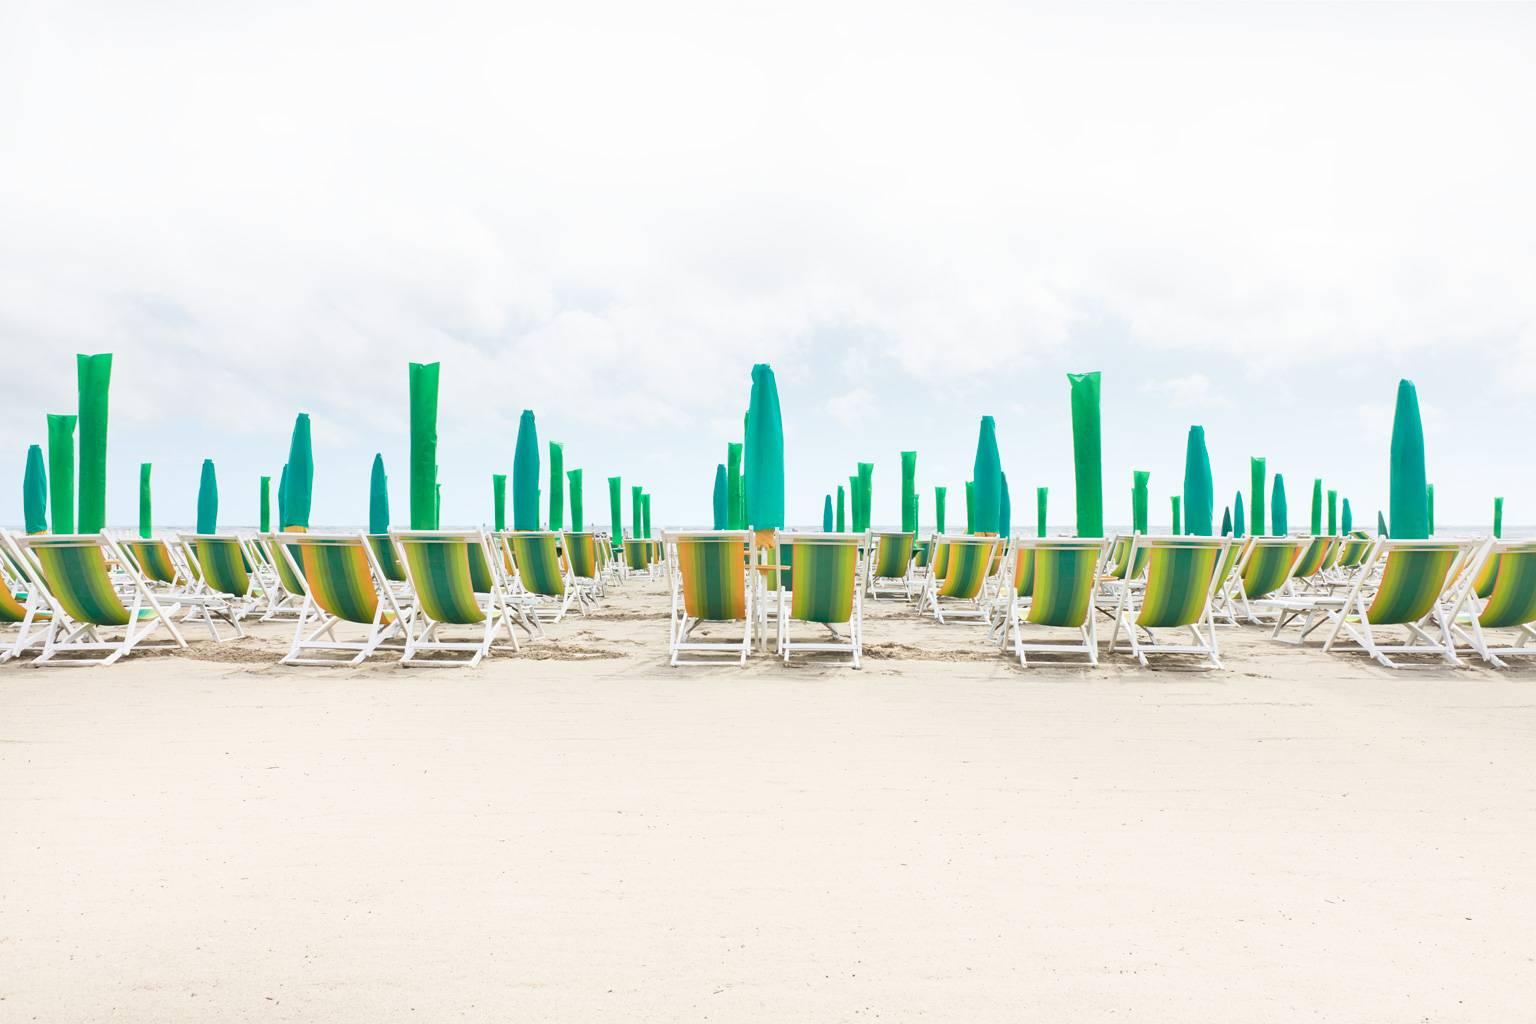 Forte dei Marmi (framed) - iconic Italian beach resort on Mediterranean Sea